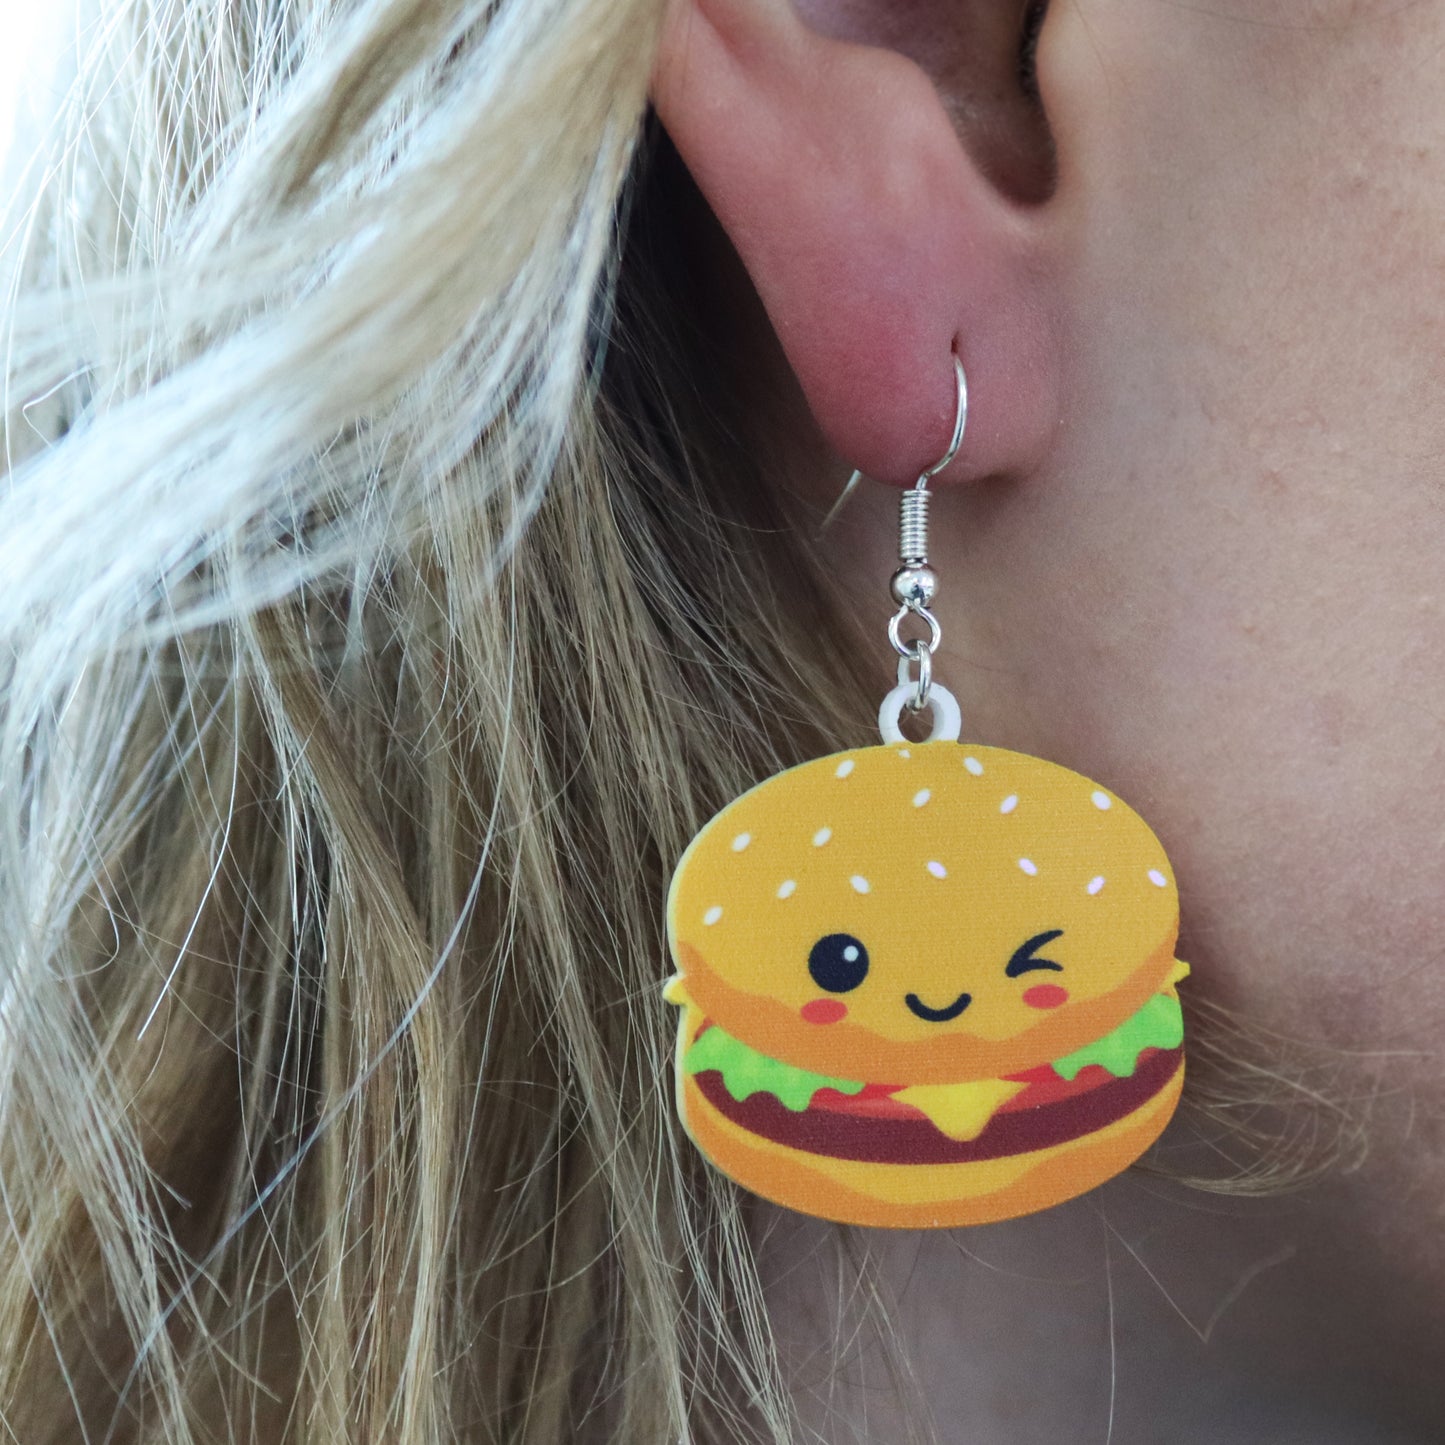 burger earring shown in ears